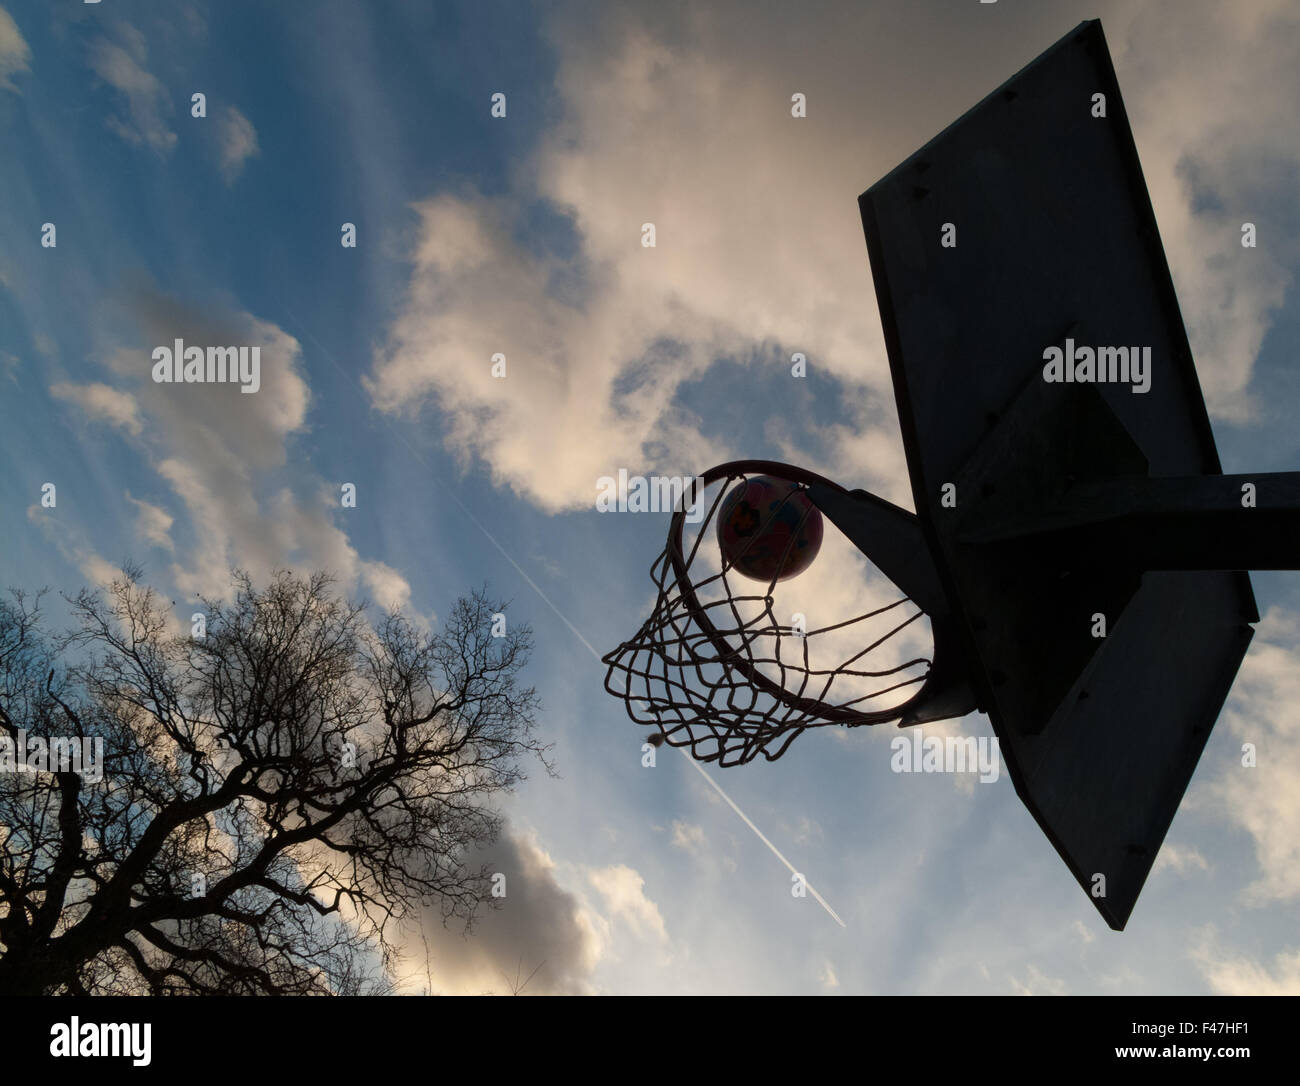 ball going into basketball / netball hoop Stock Photo